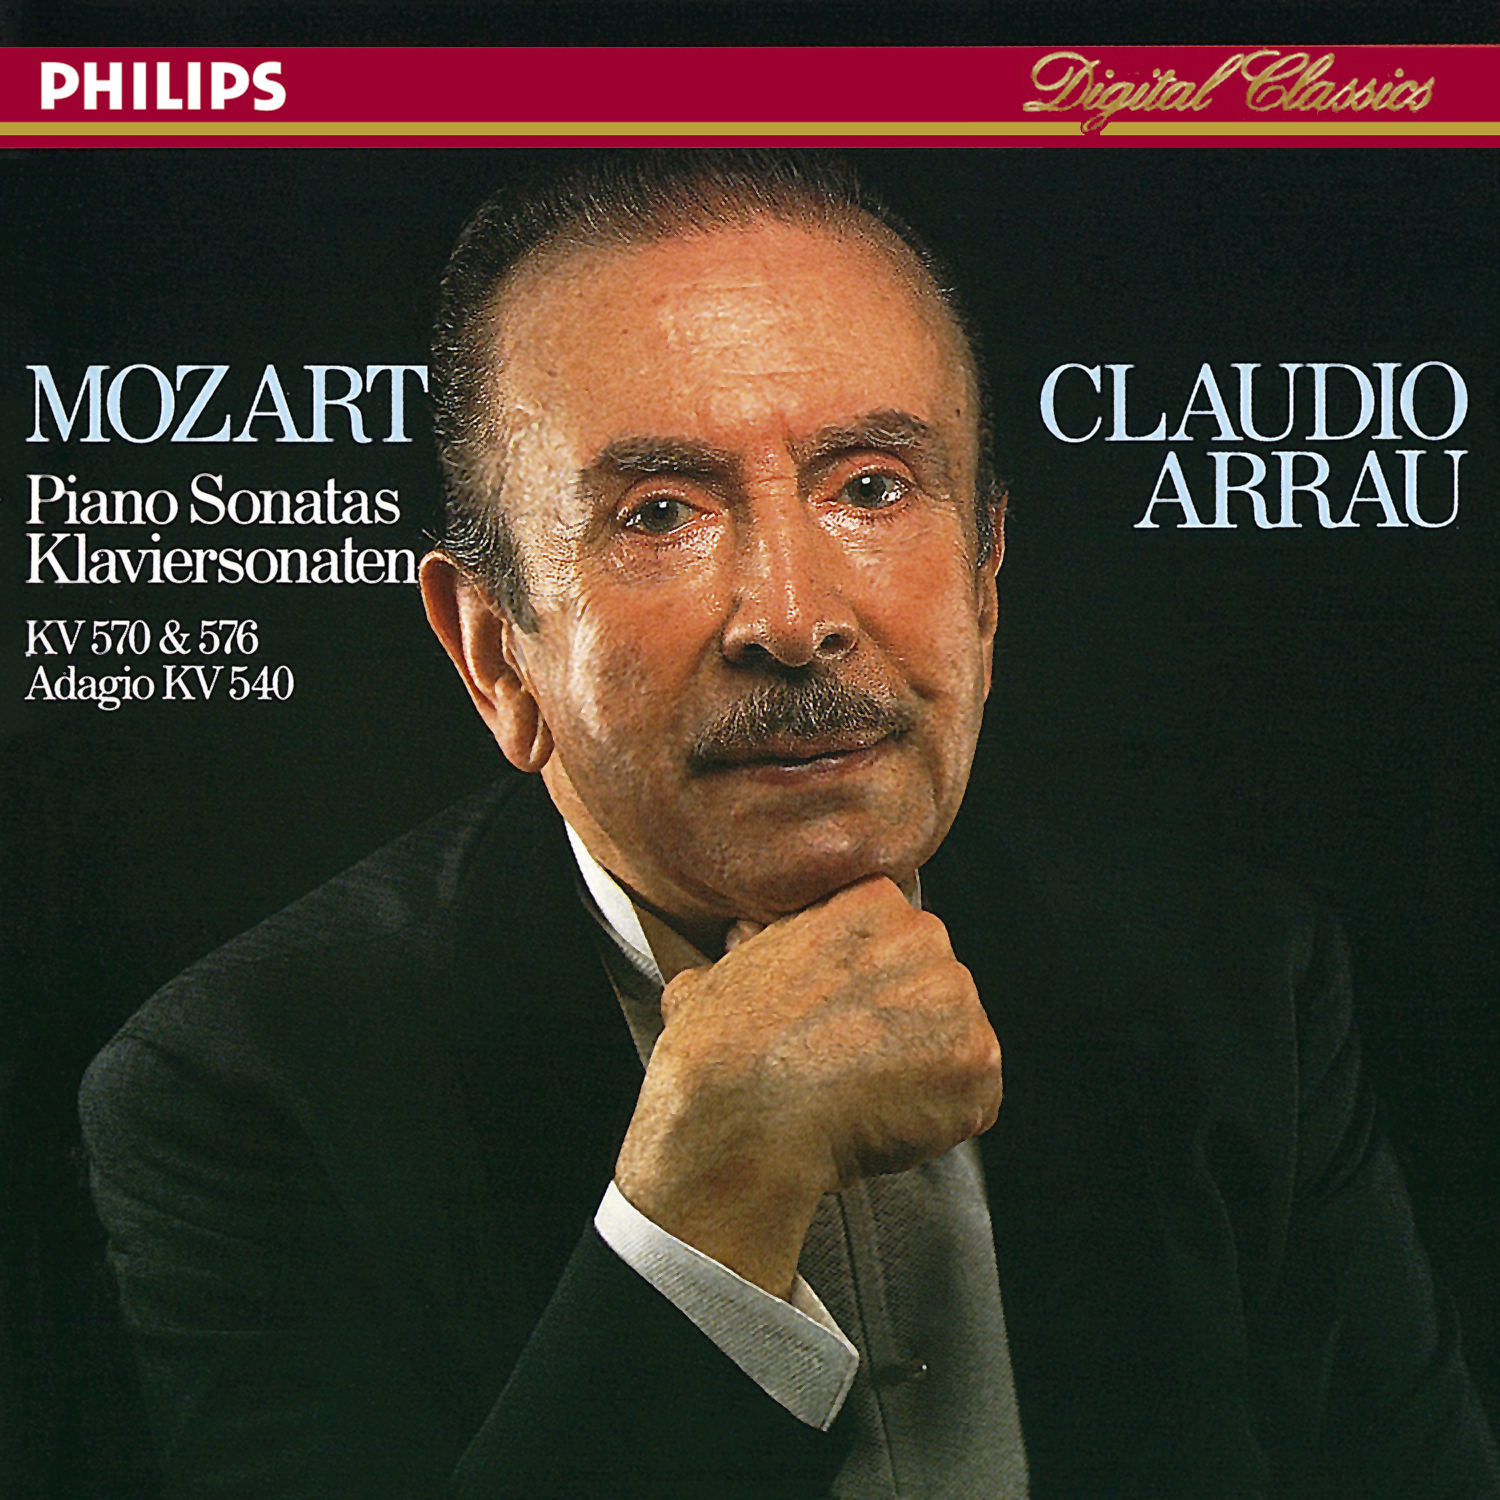 Claudio Arrau - Piano Sonata No.17 in B flat, K.570:3. Allegretto